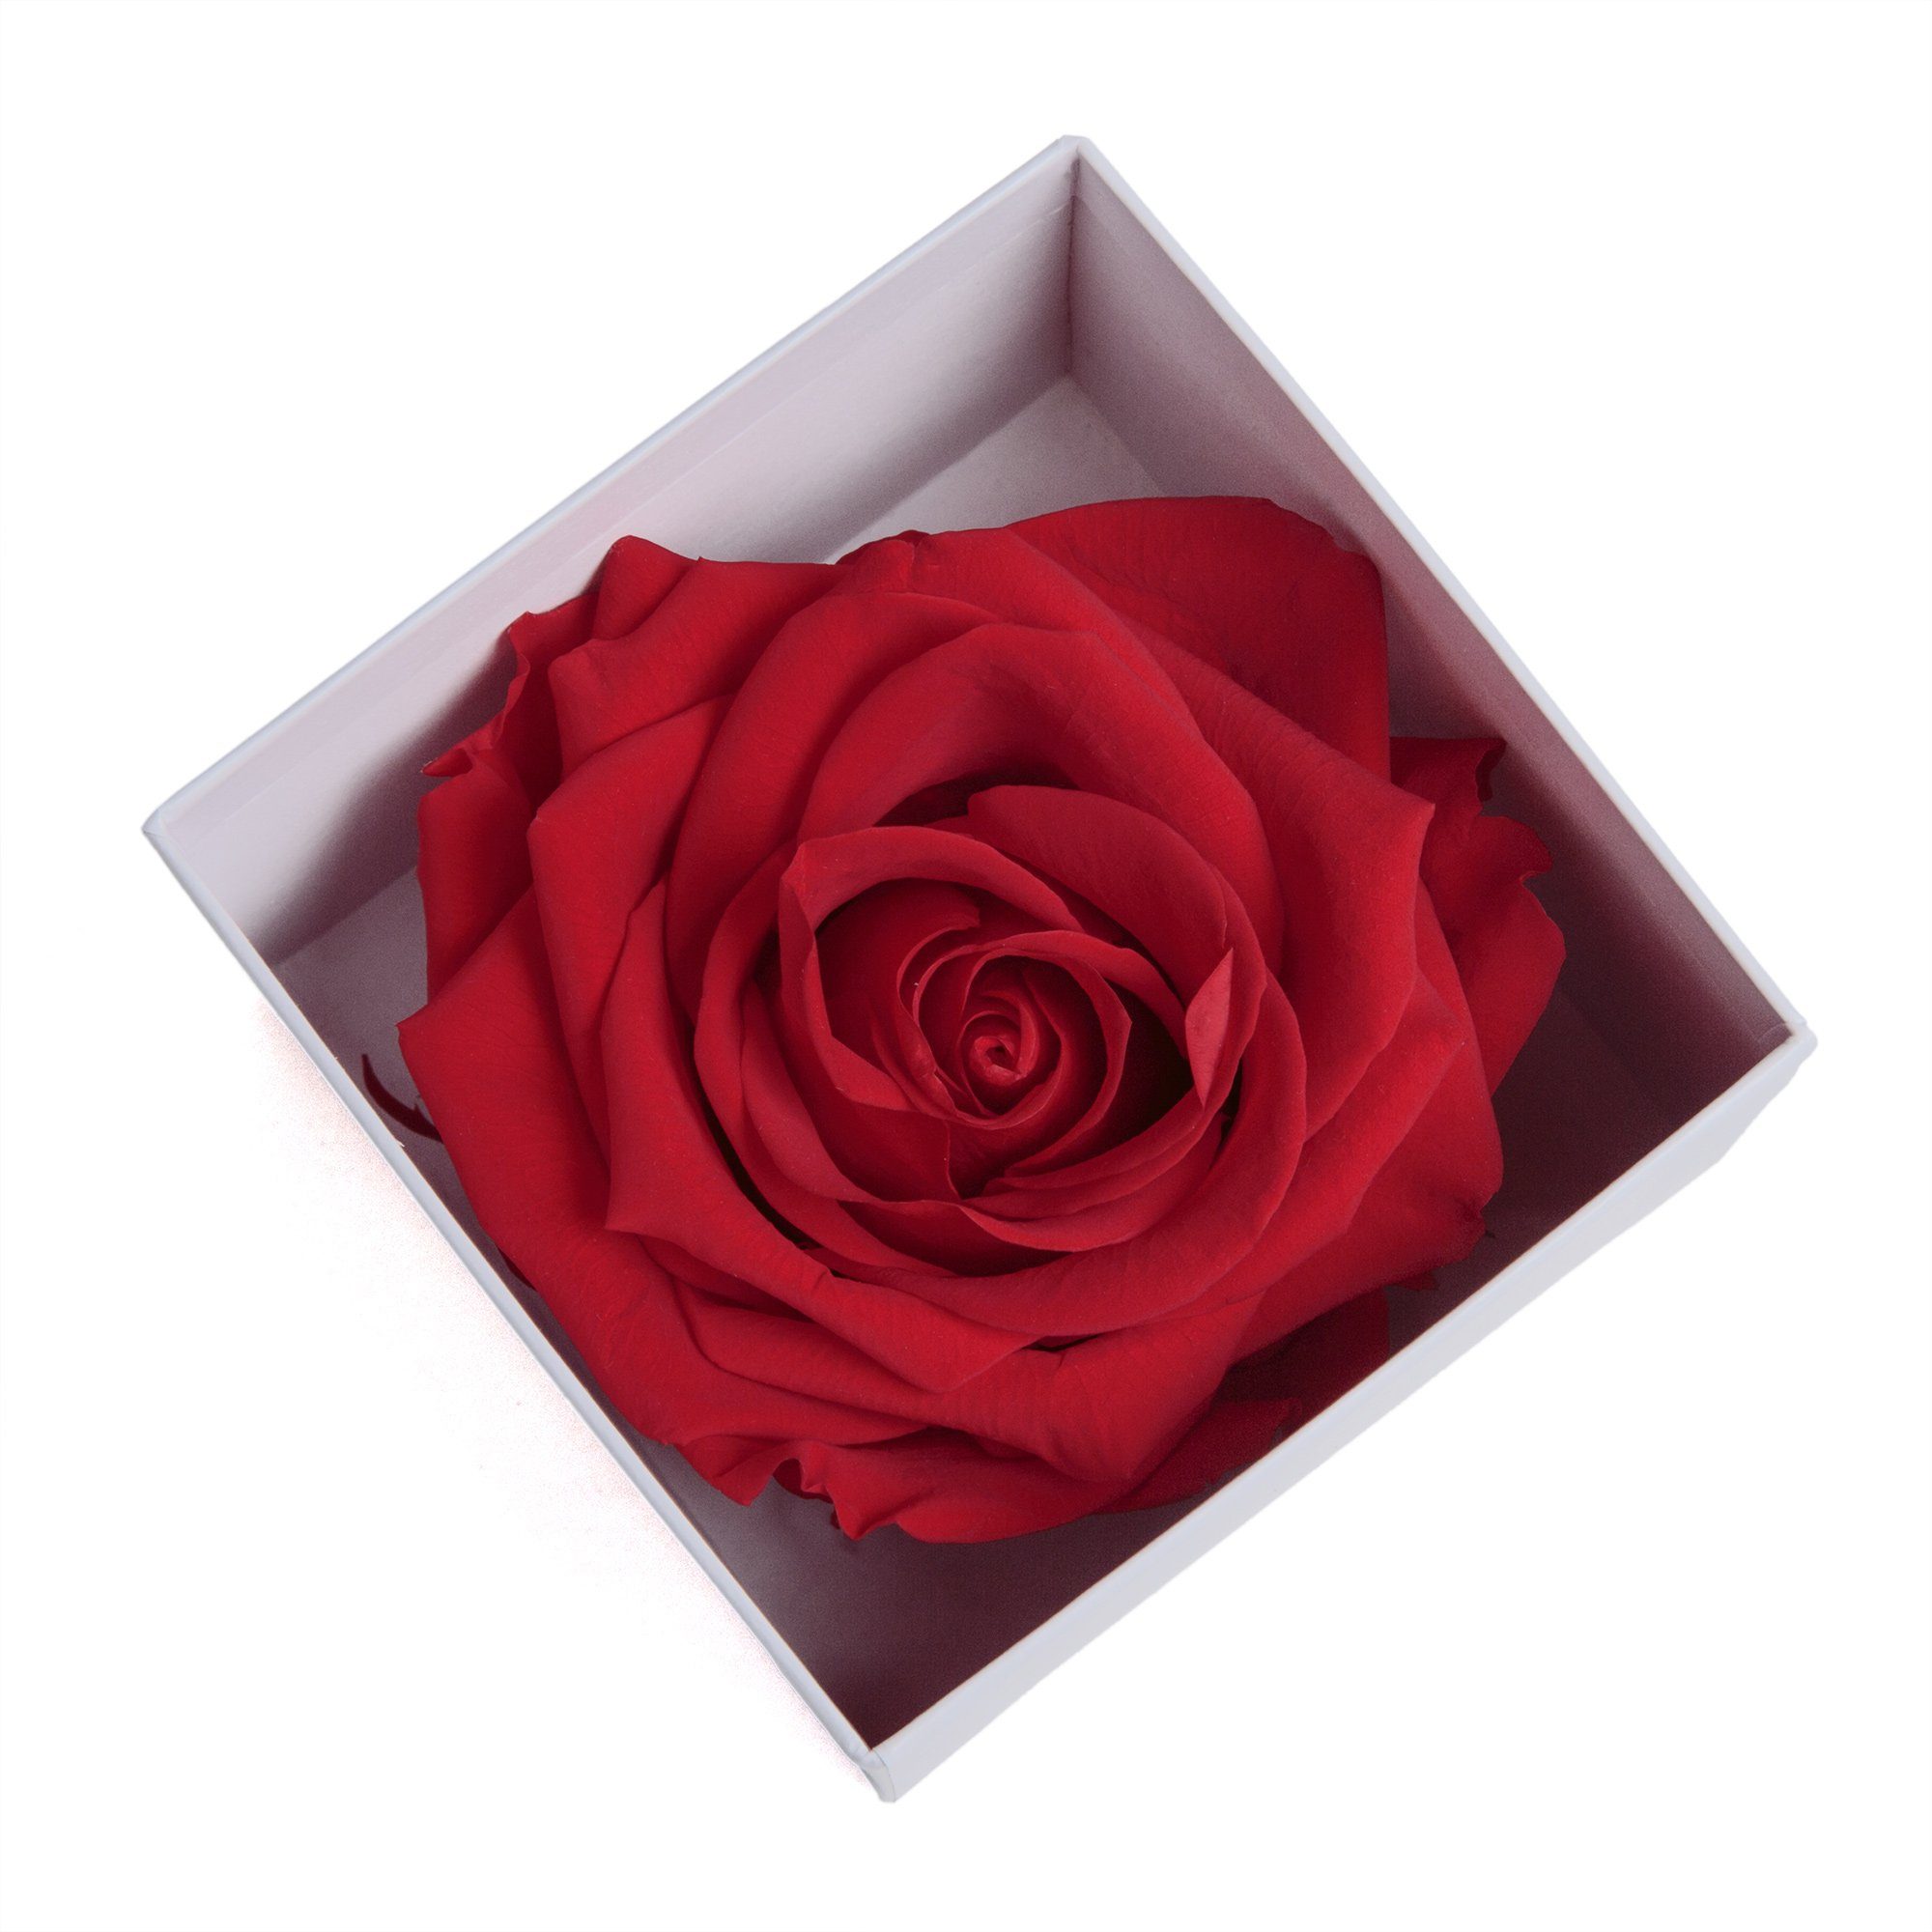 Kunstblume Infinity Heidelberg, Rose Geschenk 3 Box cm, LOVE YOU ROSEMARIE Rose, Valentinstag Höhe in Liebesbeweis zu Frauen SCHULZ rot bis weiß 6 Jahre Rose I haltbar